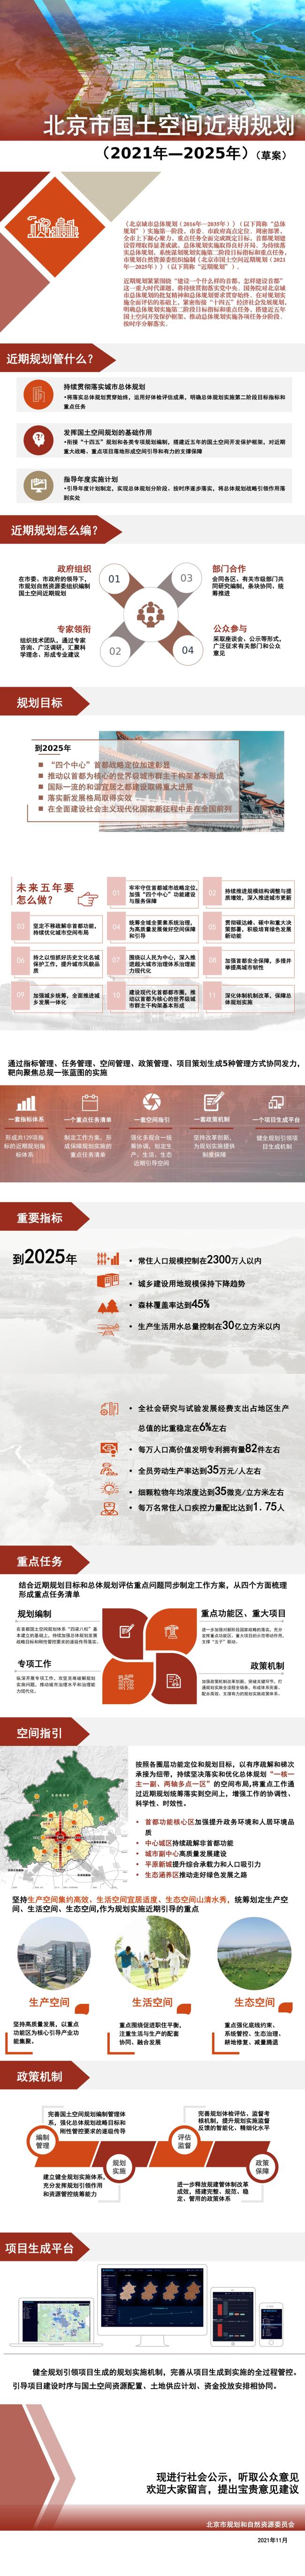 北京：到2025年，常住人口规模拟控制在2300万人以内